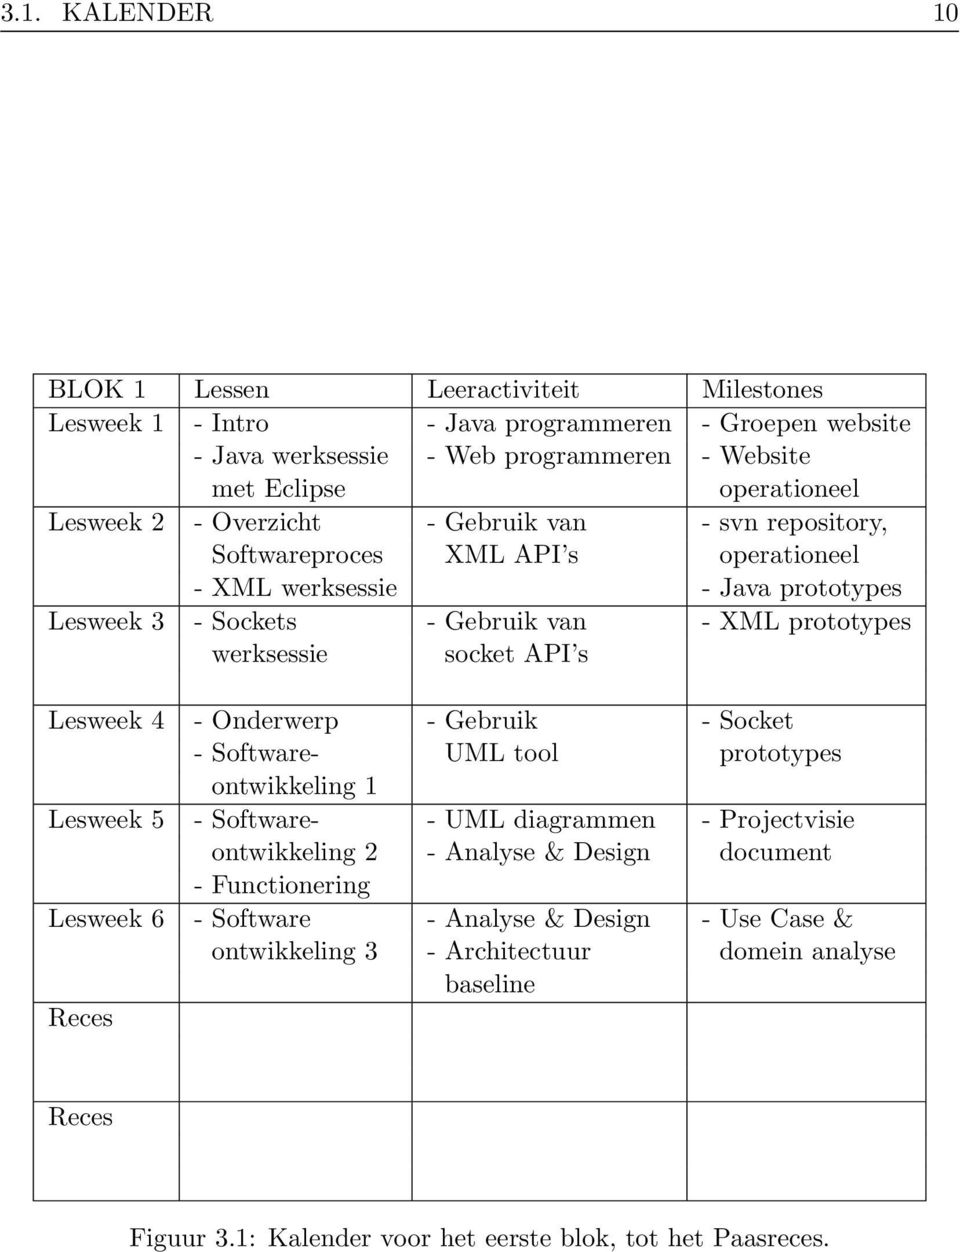 socket API s Lesweek 4 - Onderwerp - Gebruik - Socket - Software- UML tool prototypes ontwikkeling 1 Lesweek 5 - Software- - UML diagrammen - Projectvisie ontwikkeling 2 - Analyse & Design